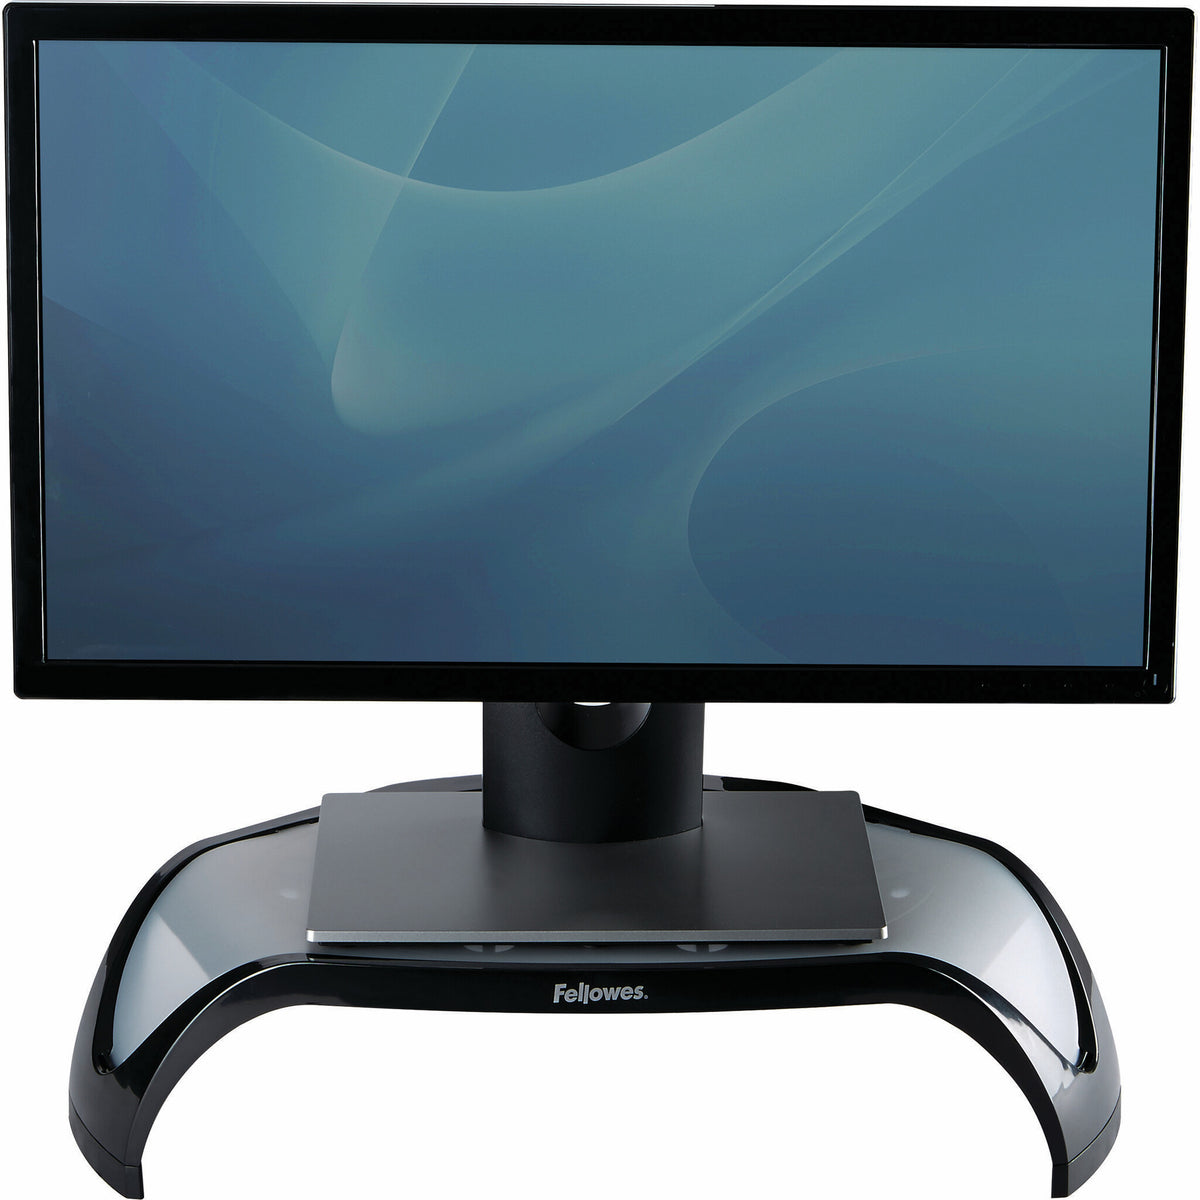 Fellowes 8020801 - Desk monitor riser